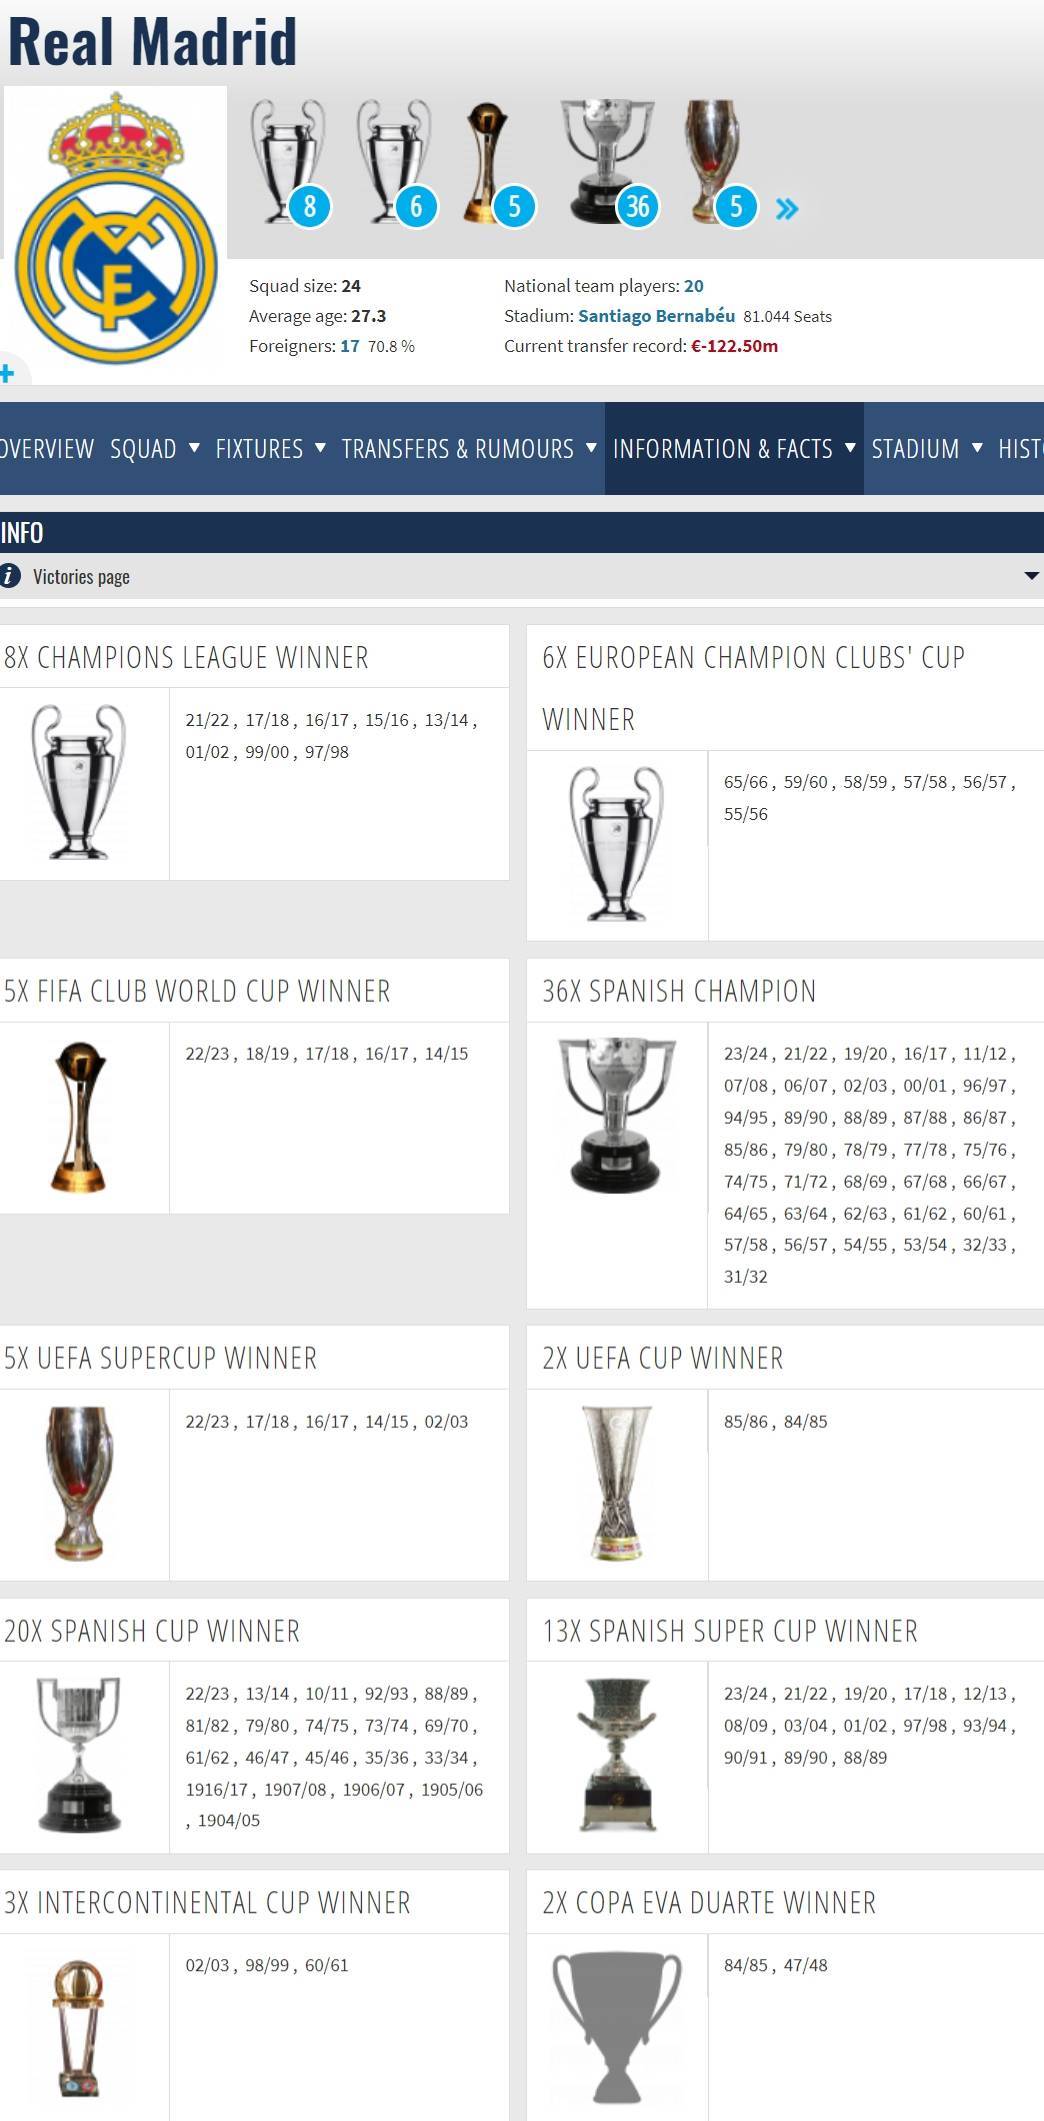 欧冠:小俱乐部100座冠军欧冠了皇马36座西甲、14座欧冠...再加世纪最佳